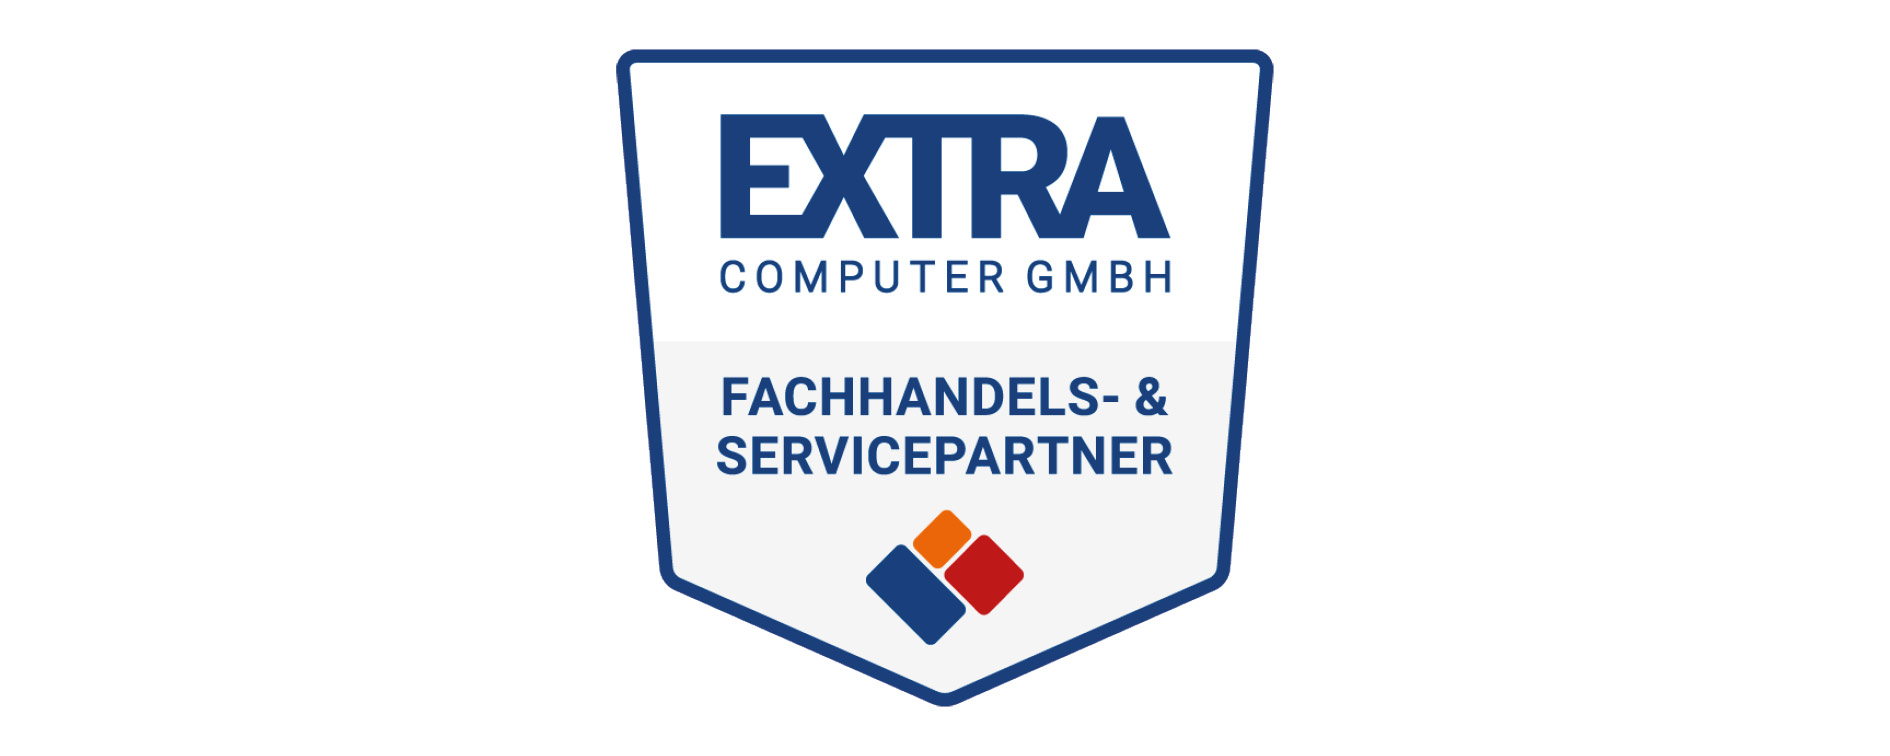 Extra Computer GmbH Fachhandels- und Servicepartner